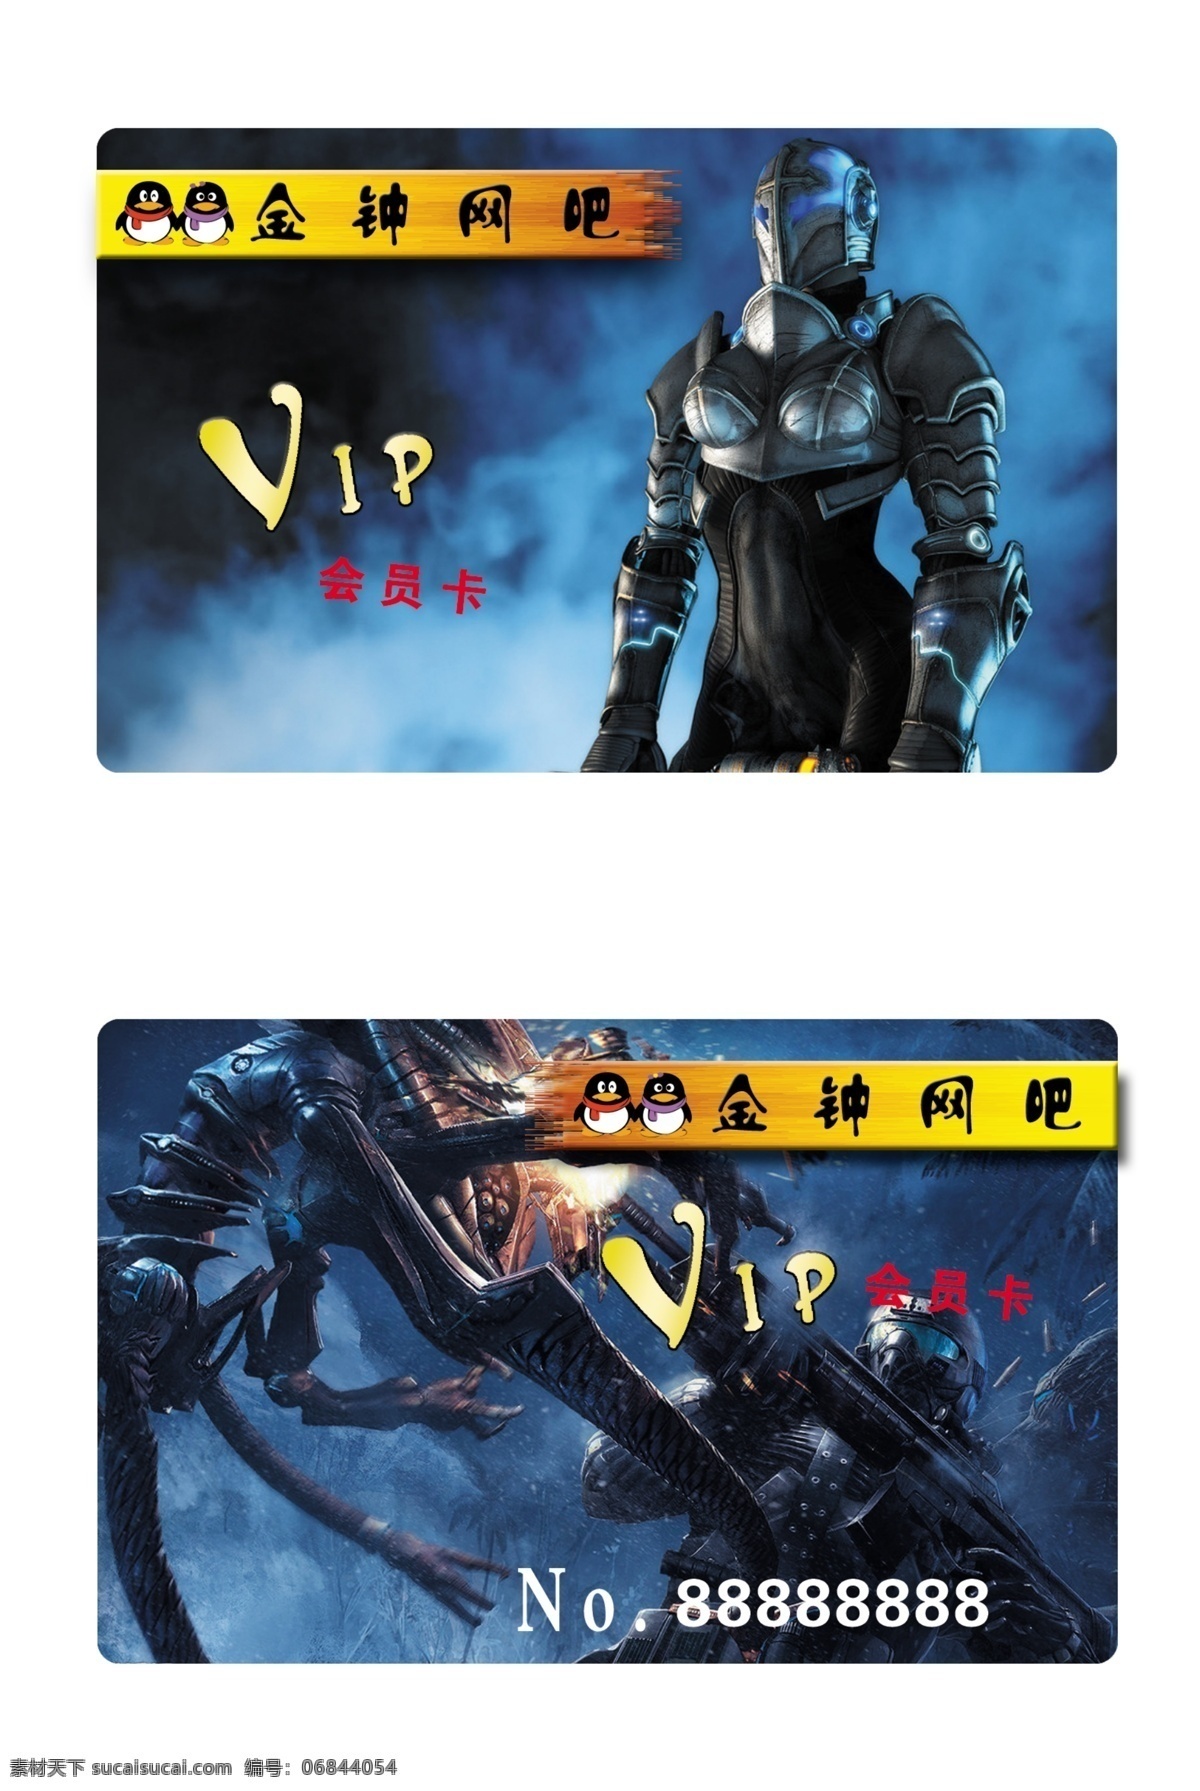 网吧vip 网吧会员卡 会员卡 vip卡 游戏 怪兽 枪战 分层 名片psd 名片设计 广告设计模板 源文件